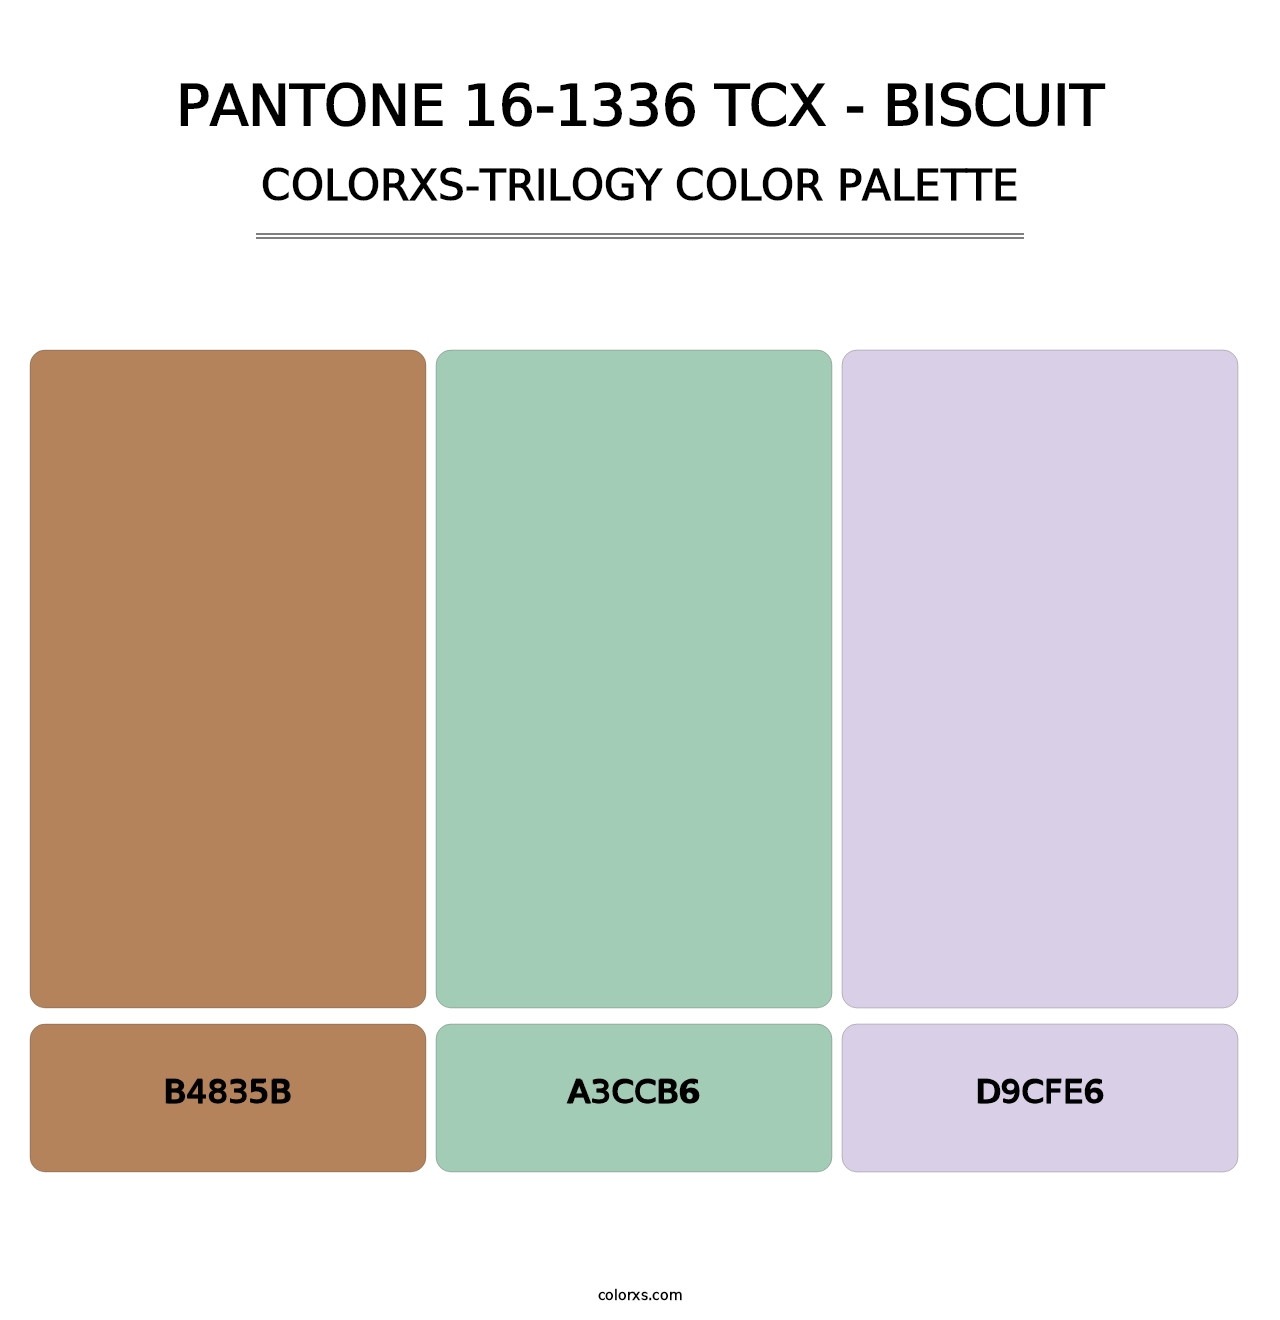 PANTONE 16-1336 TCX - Biscuit - Colorxs Trilogy Palette